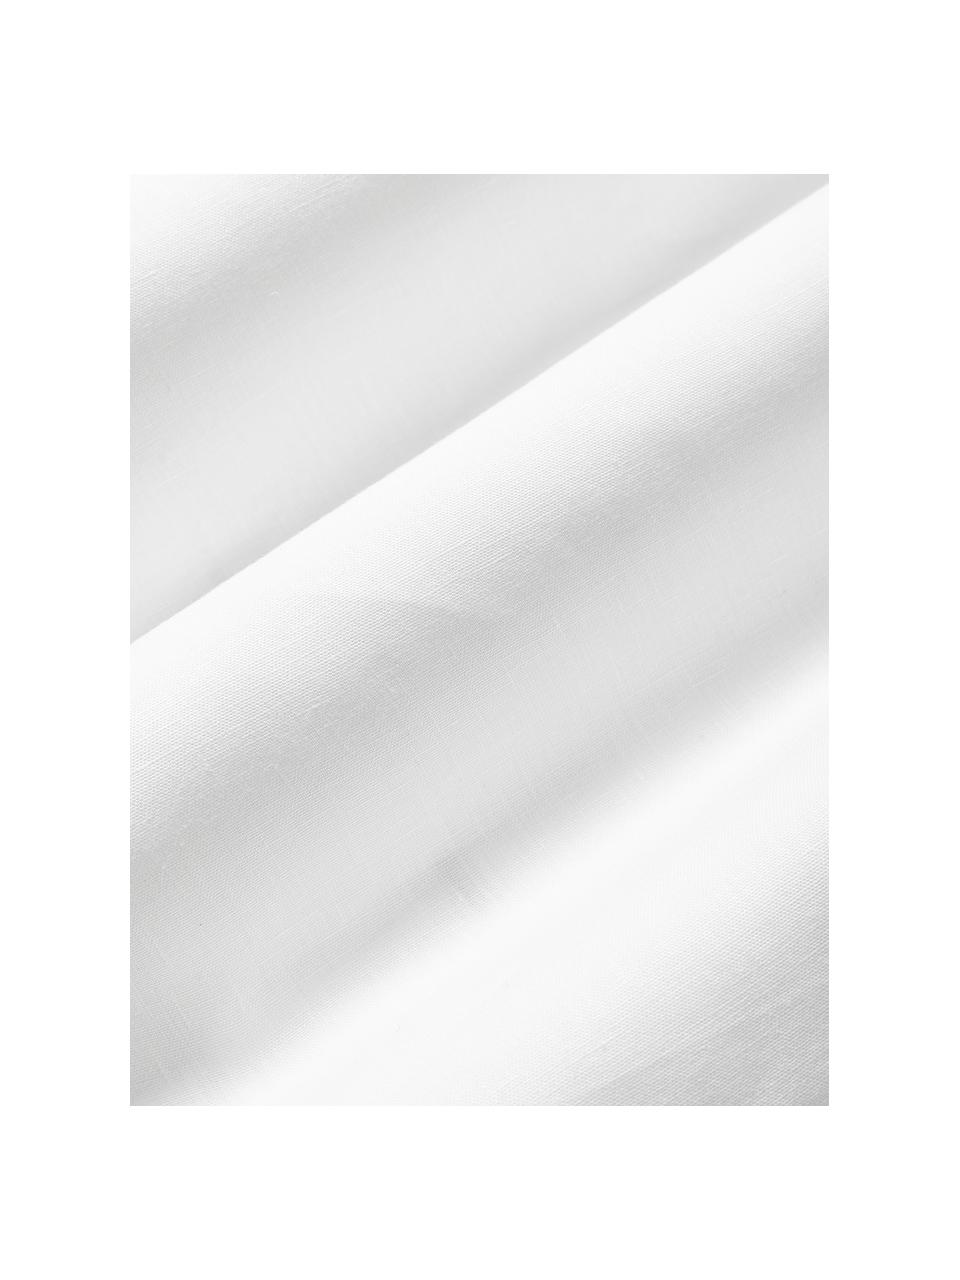 Leinen-Kissenhülle Jaylin in Weiß mit Stehsaum, 100 % Leinen

Leinen hat von Natur aus eher grobe Haptik und einen natürlichen Knitterlook. Die hohe Reißfestigkeit macht Leinen scheuerfest und strapazierfähig.

Das in diesem Produkt verwendete Material ist Schadstoff geprüft und zertifiziert nach STANDARD 100 by OEKO-TEX®, 6760CIT, CITEVE., Weiß, B 45 x L 45 cm